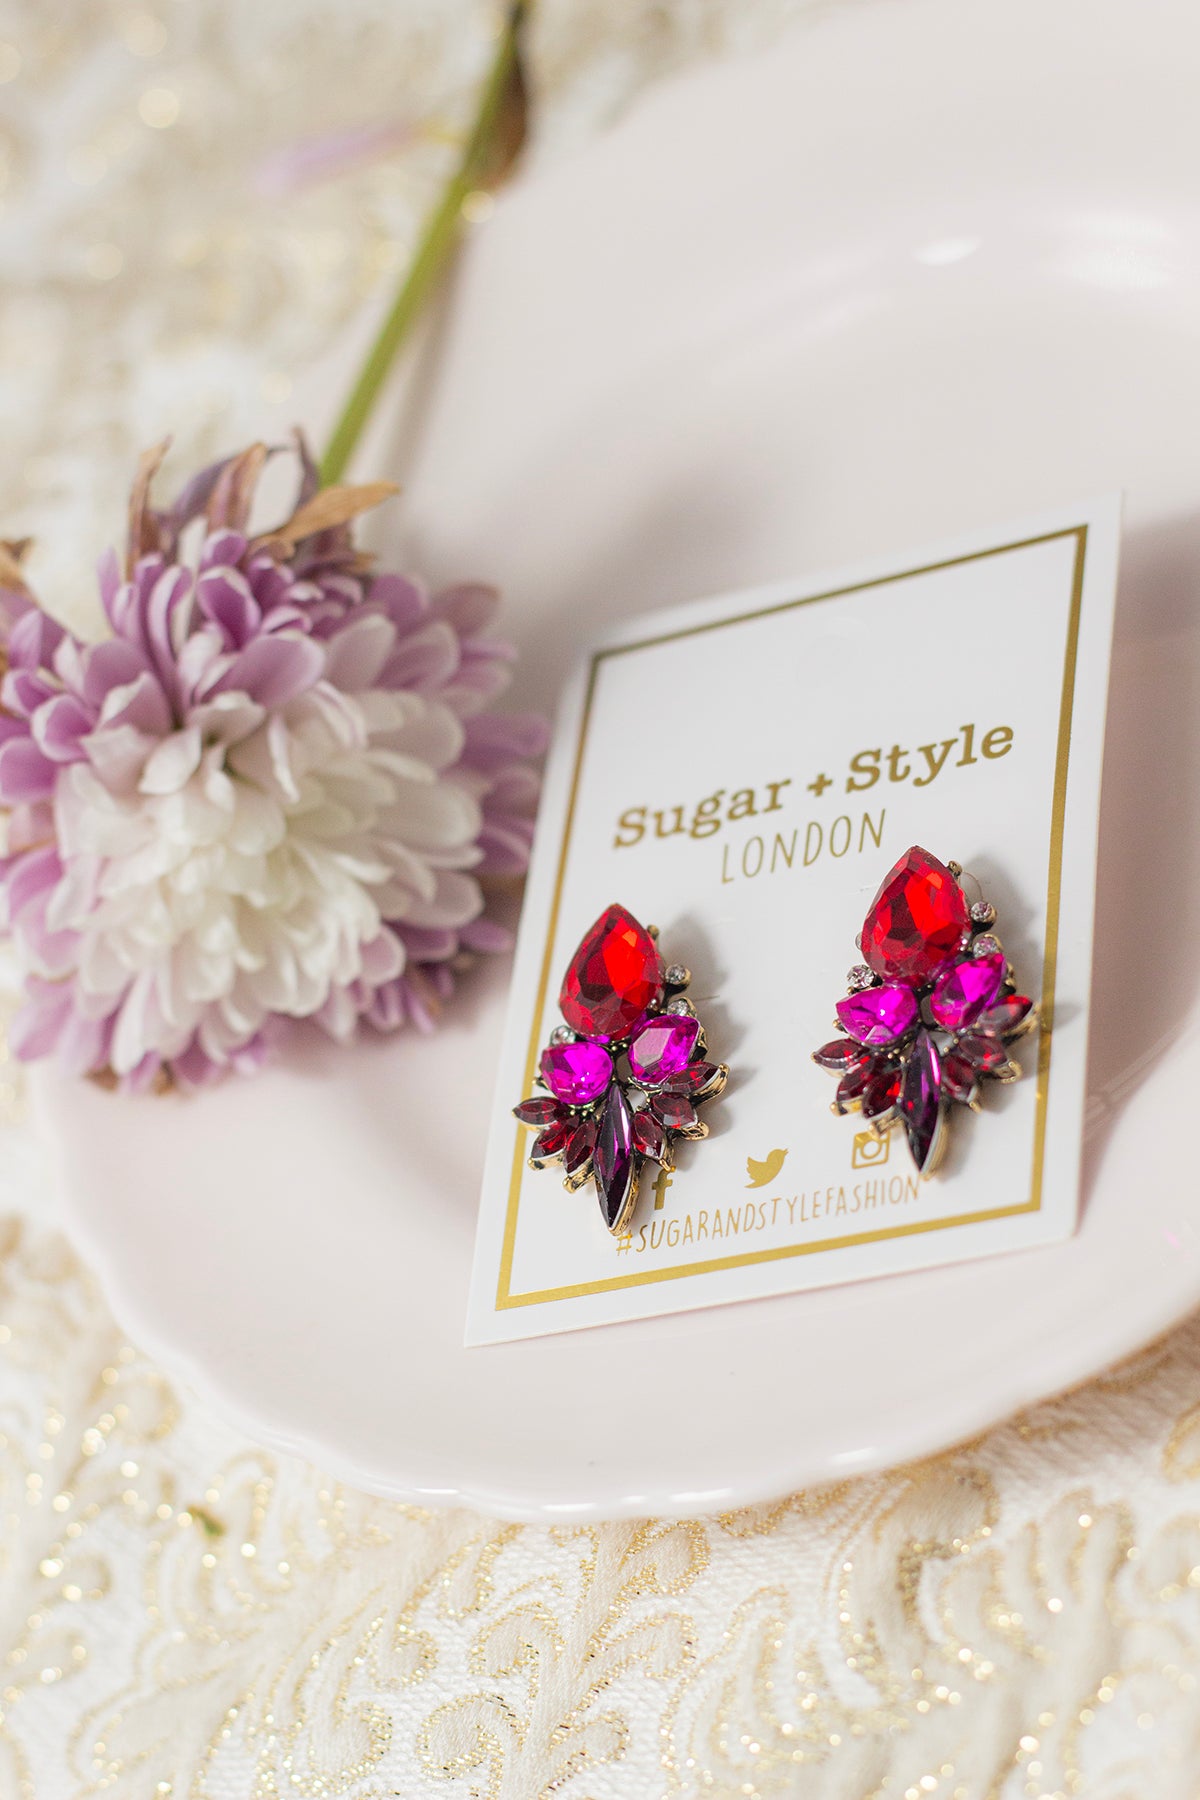 Red Gradient Gem Stud Earrings - Sugar + Style